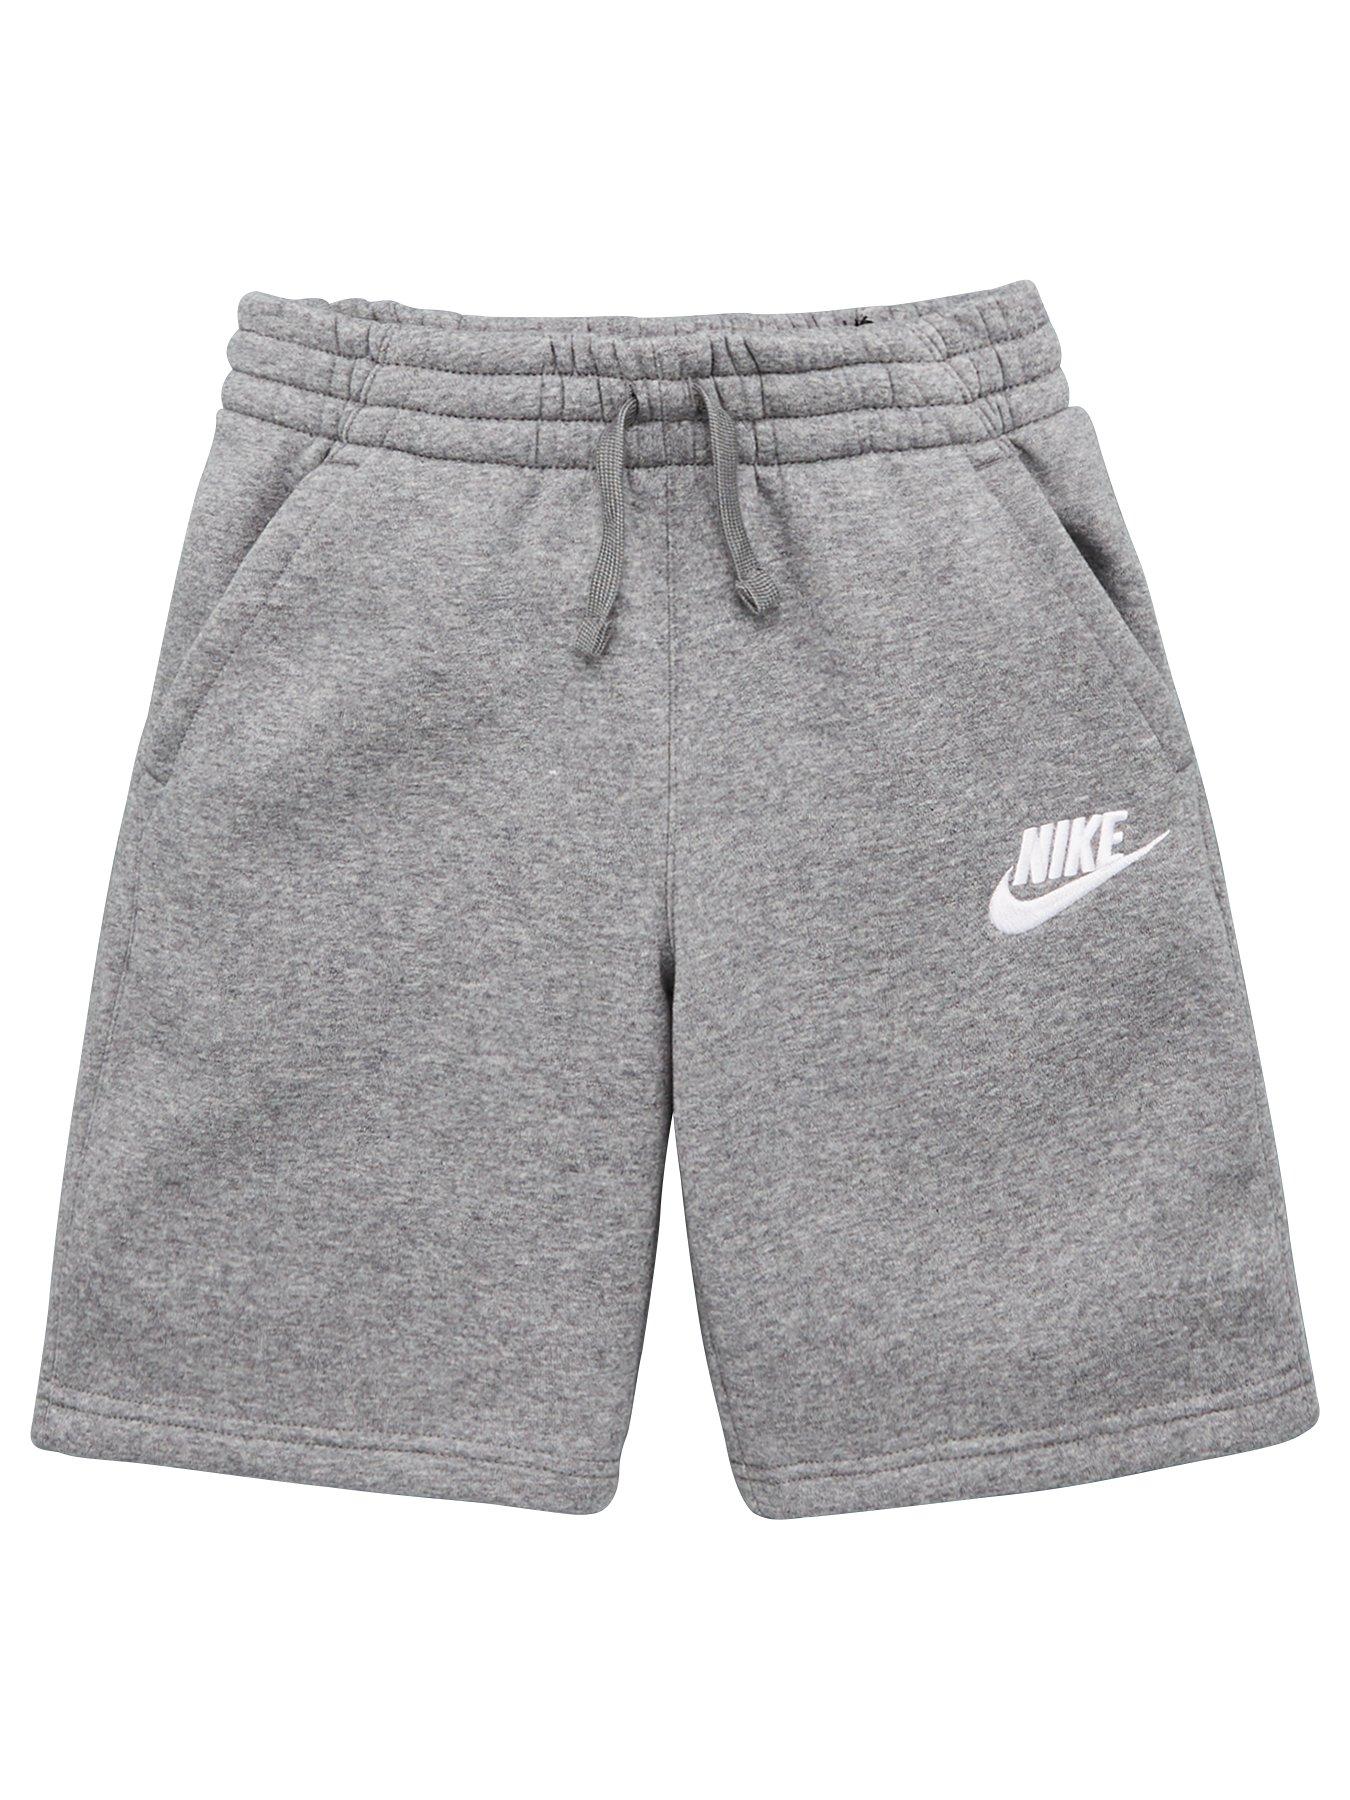 nike shorts grey and white